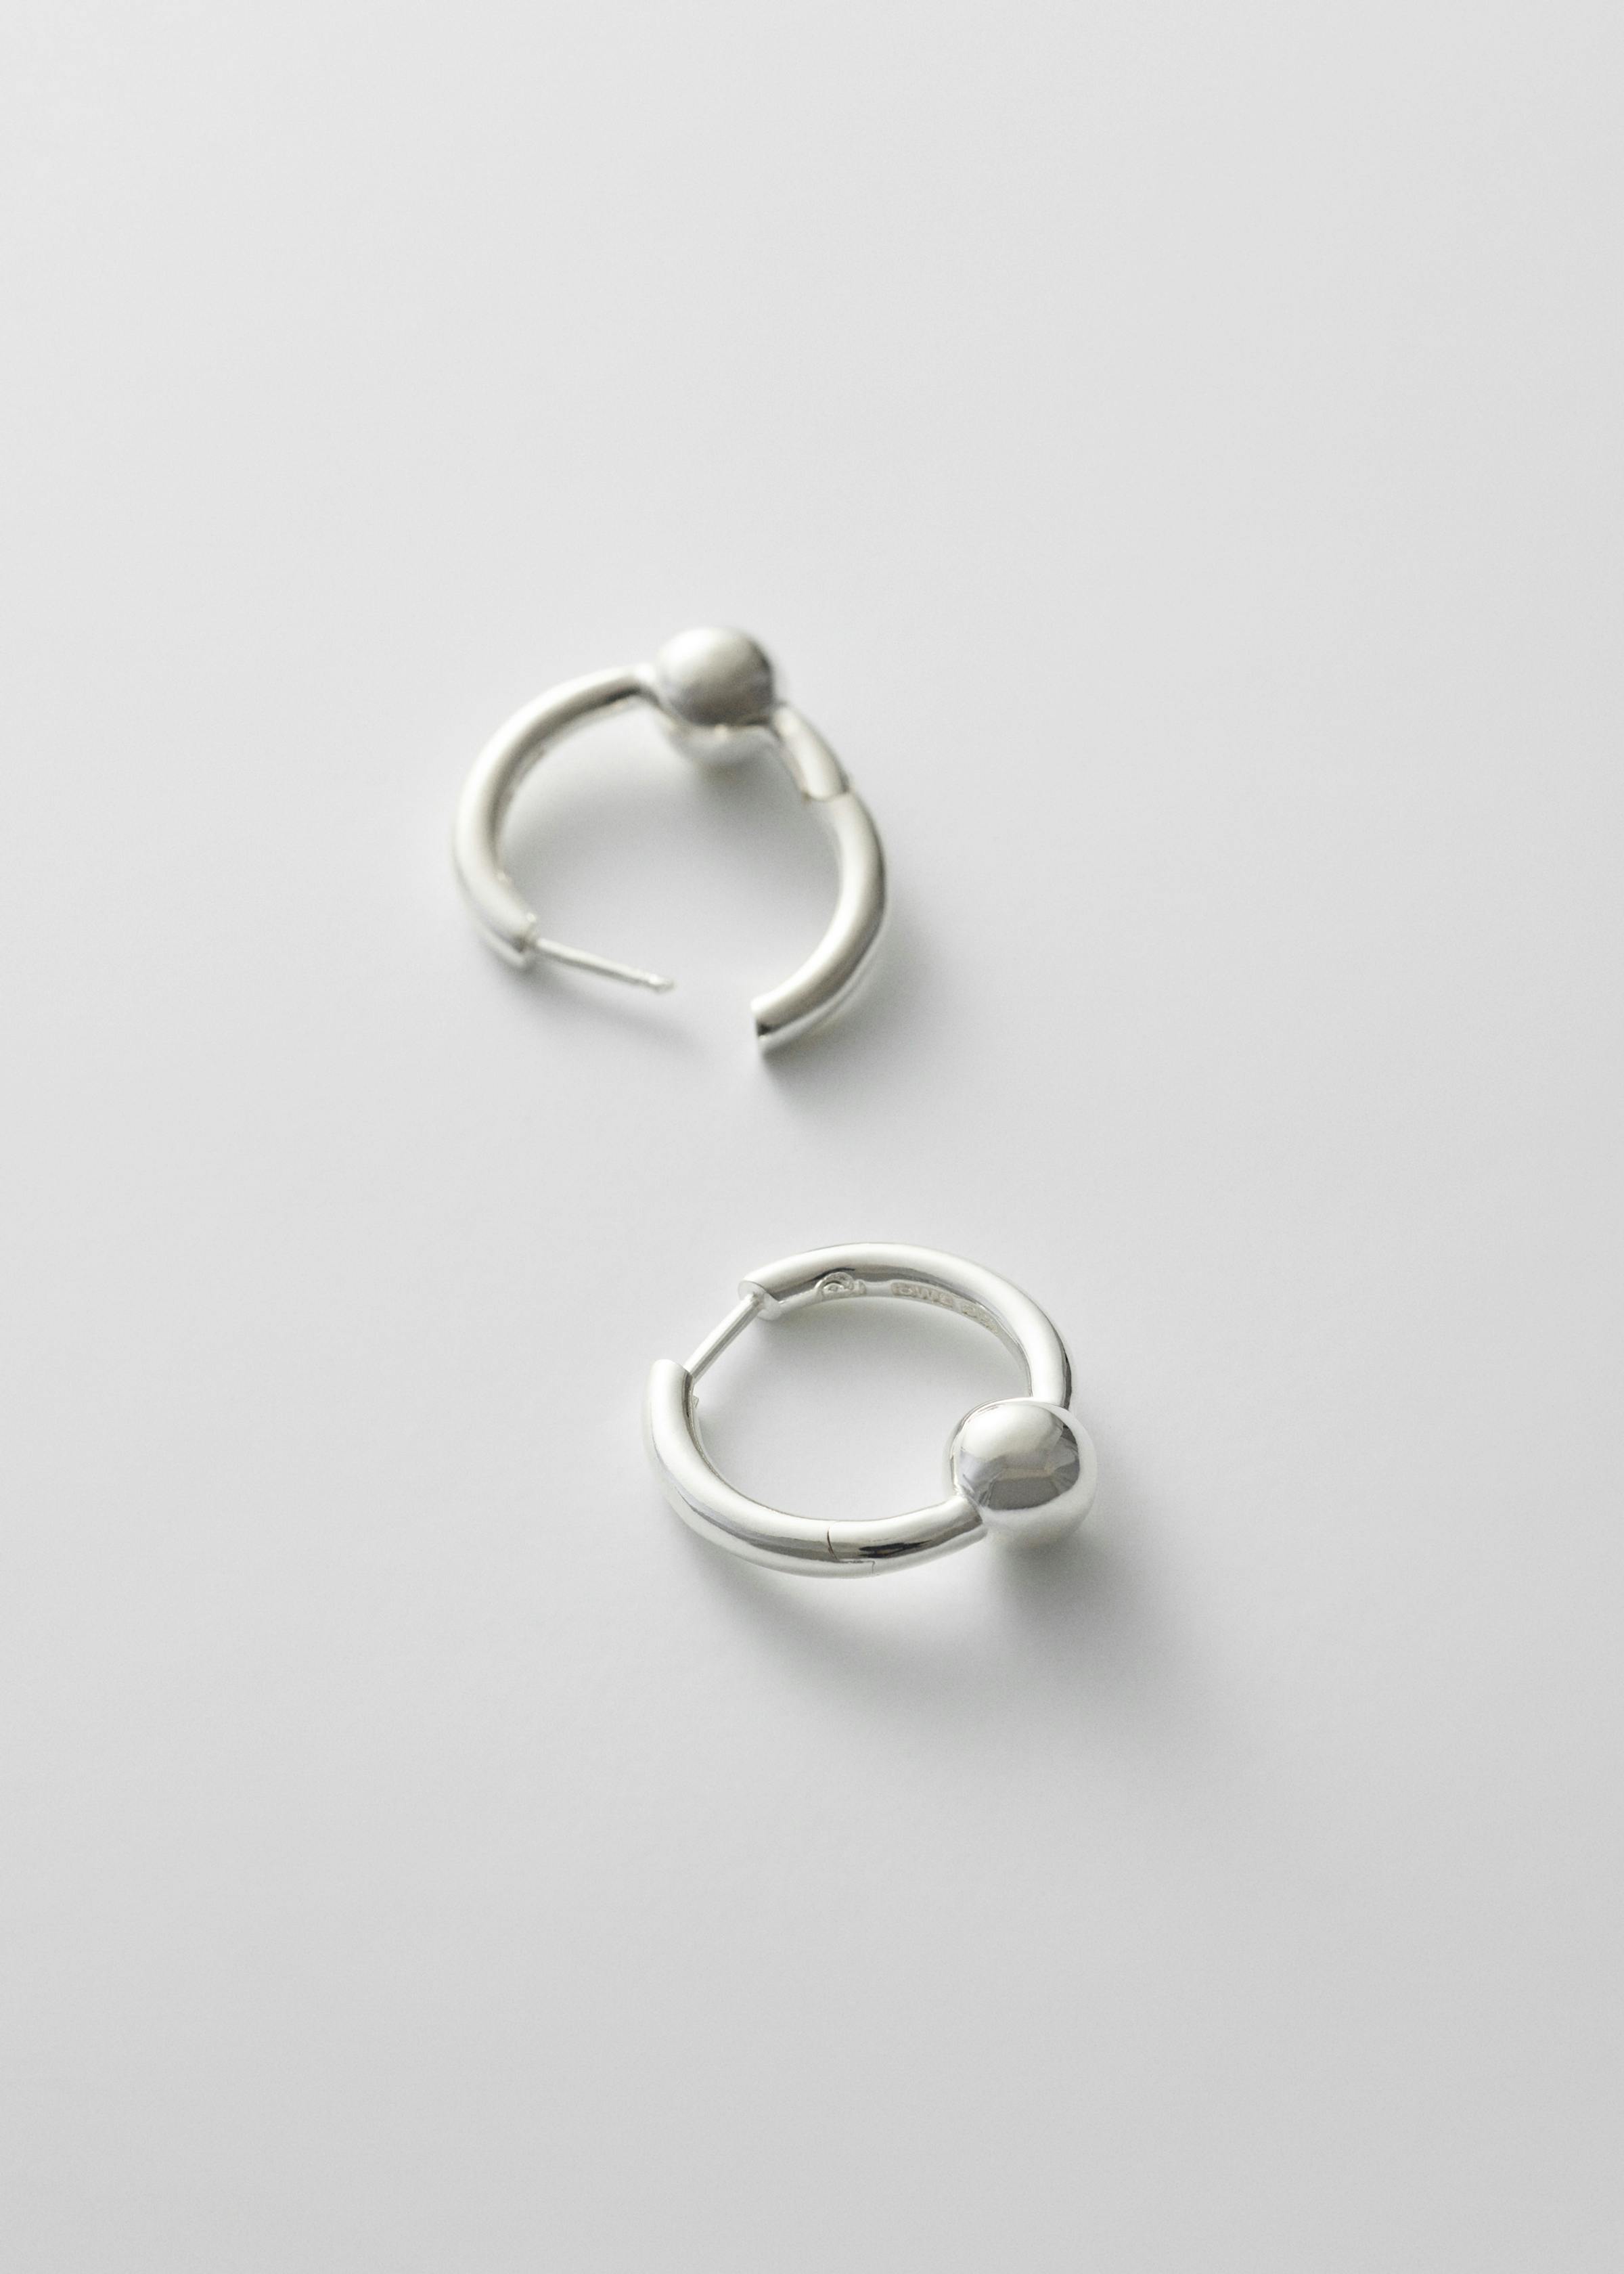 Pearl earrings medium